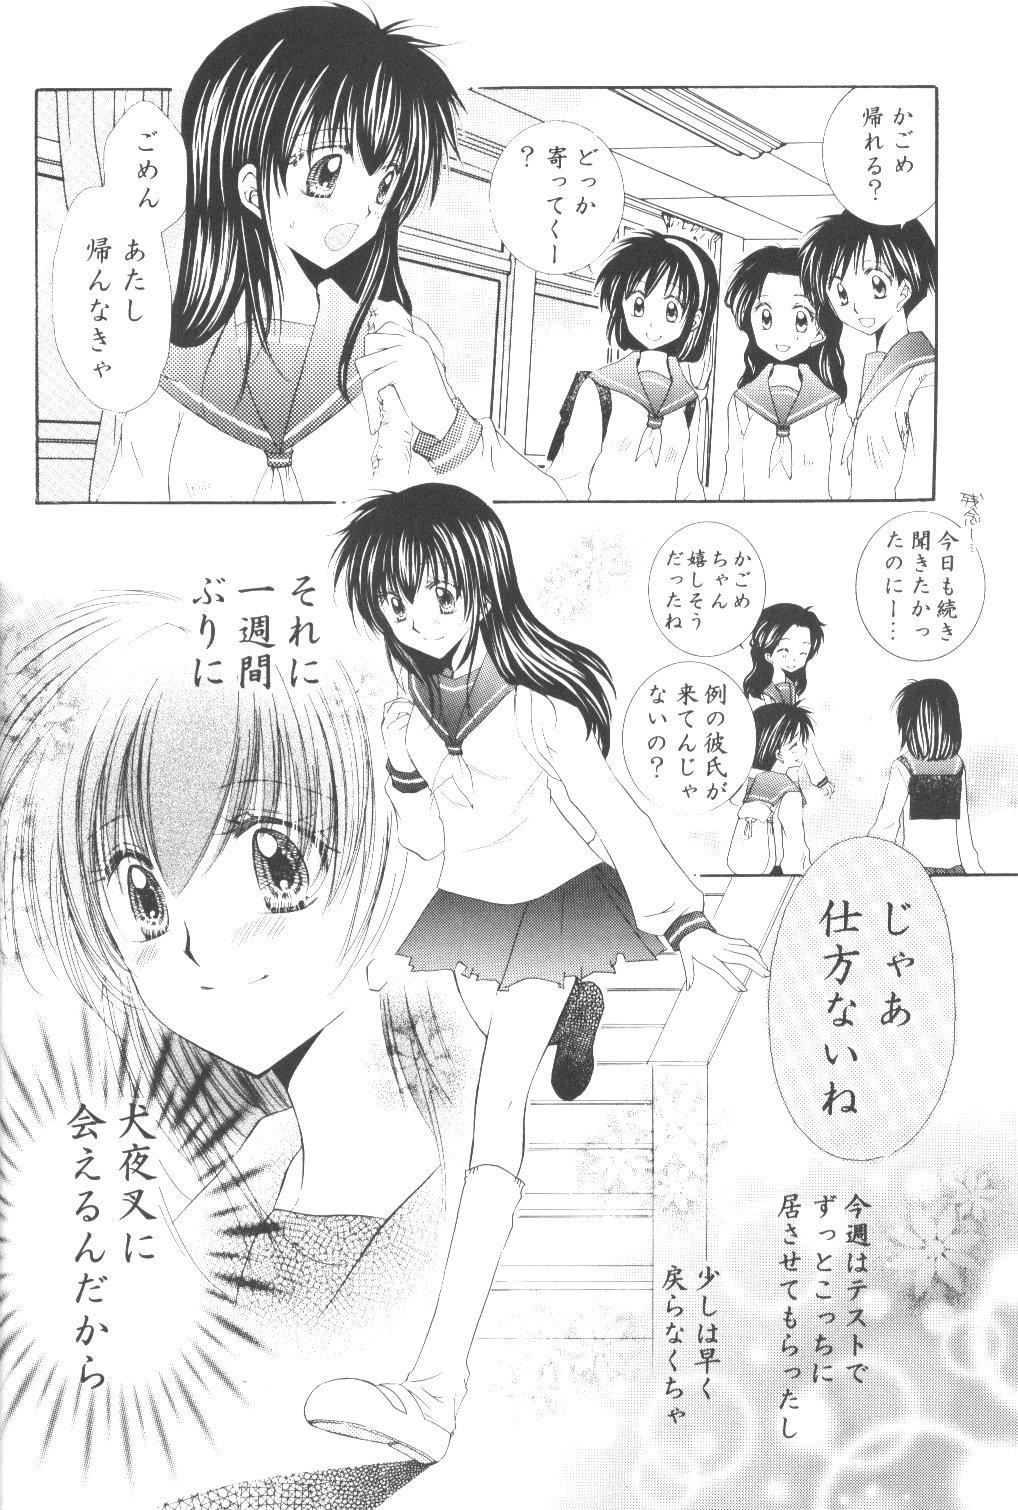 Titties Ryuusei Ryodan - Inuyasha Fuck - Page 8